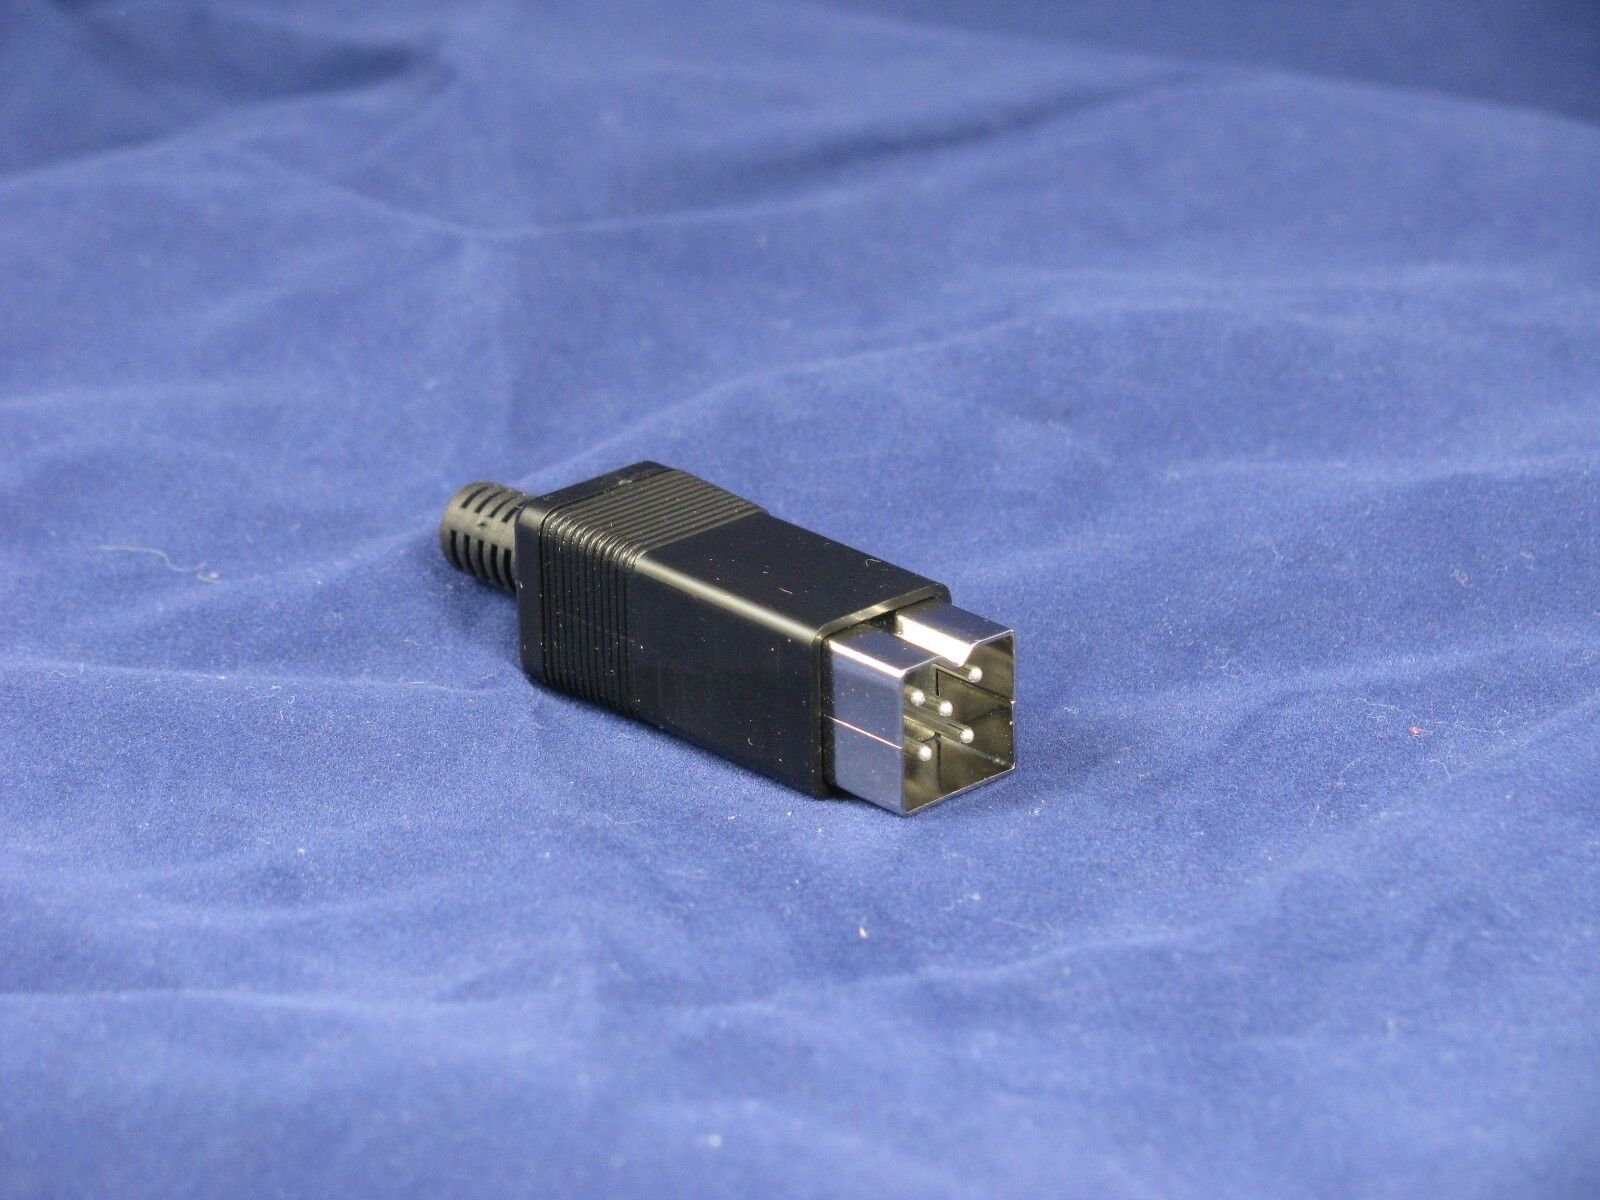 2x-Commodore 128,Amiga 500,600 Square DIN 5-pin male power connector (QTY  2)